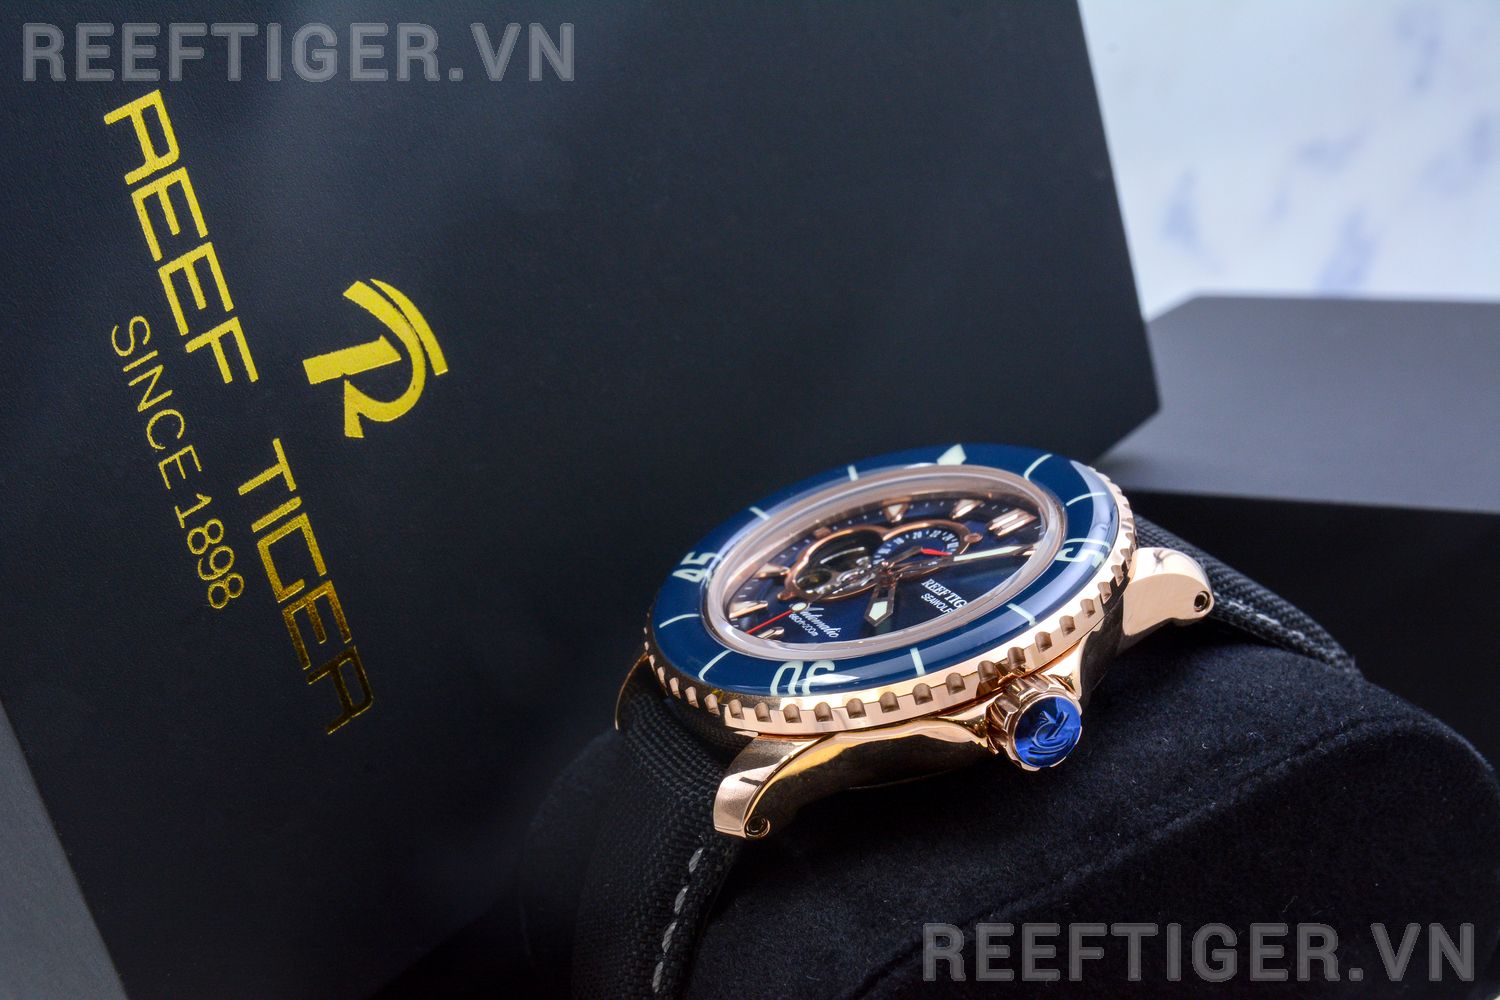 Đồng hồ Reef Tiger RGA3039-PLL